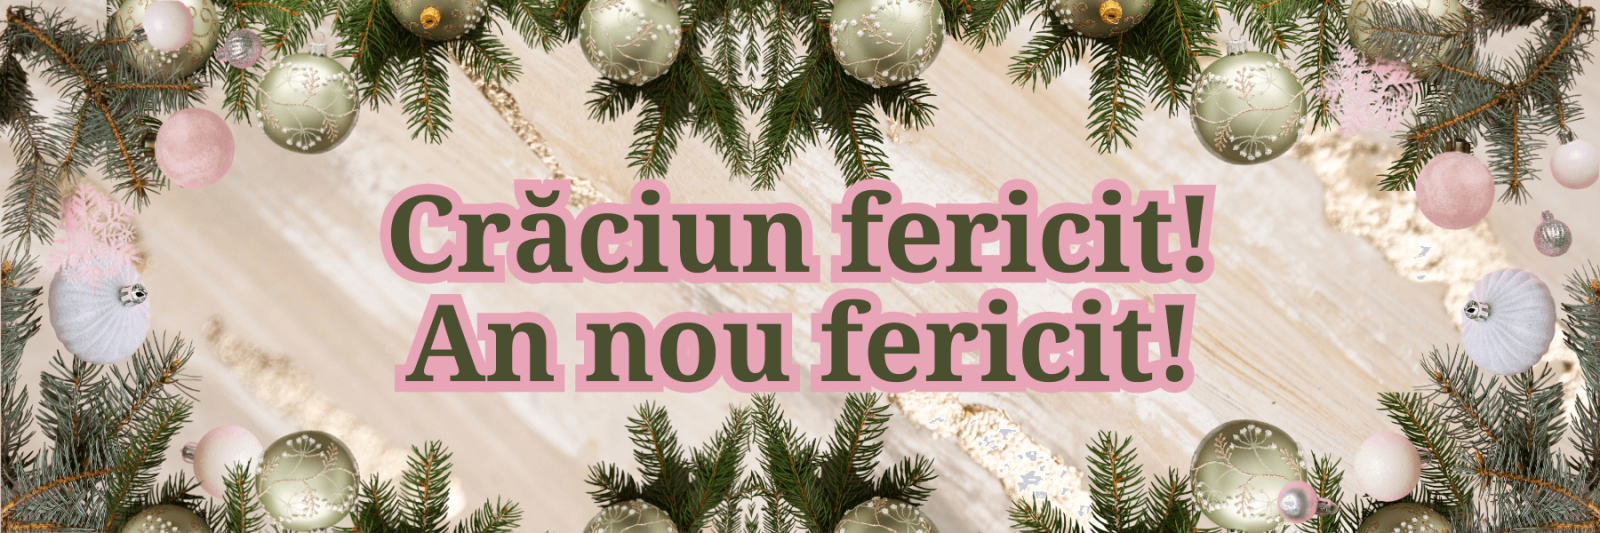 Веселого Рождества и счастливого Нового года! на румынском языке